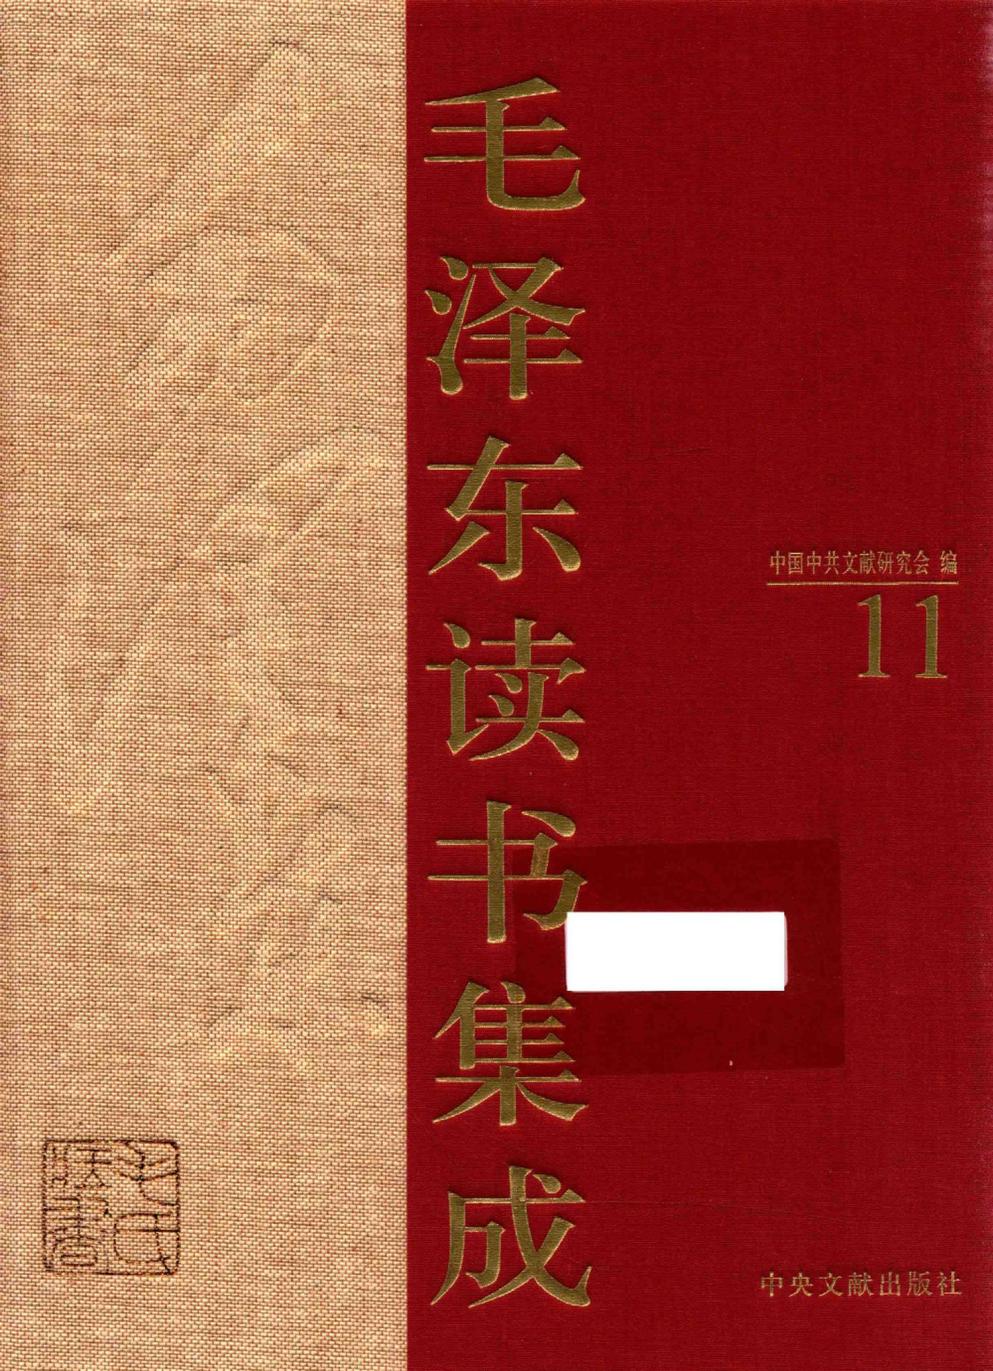 毛泽东读书集成（第11卷）-1